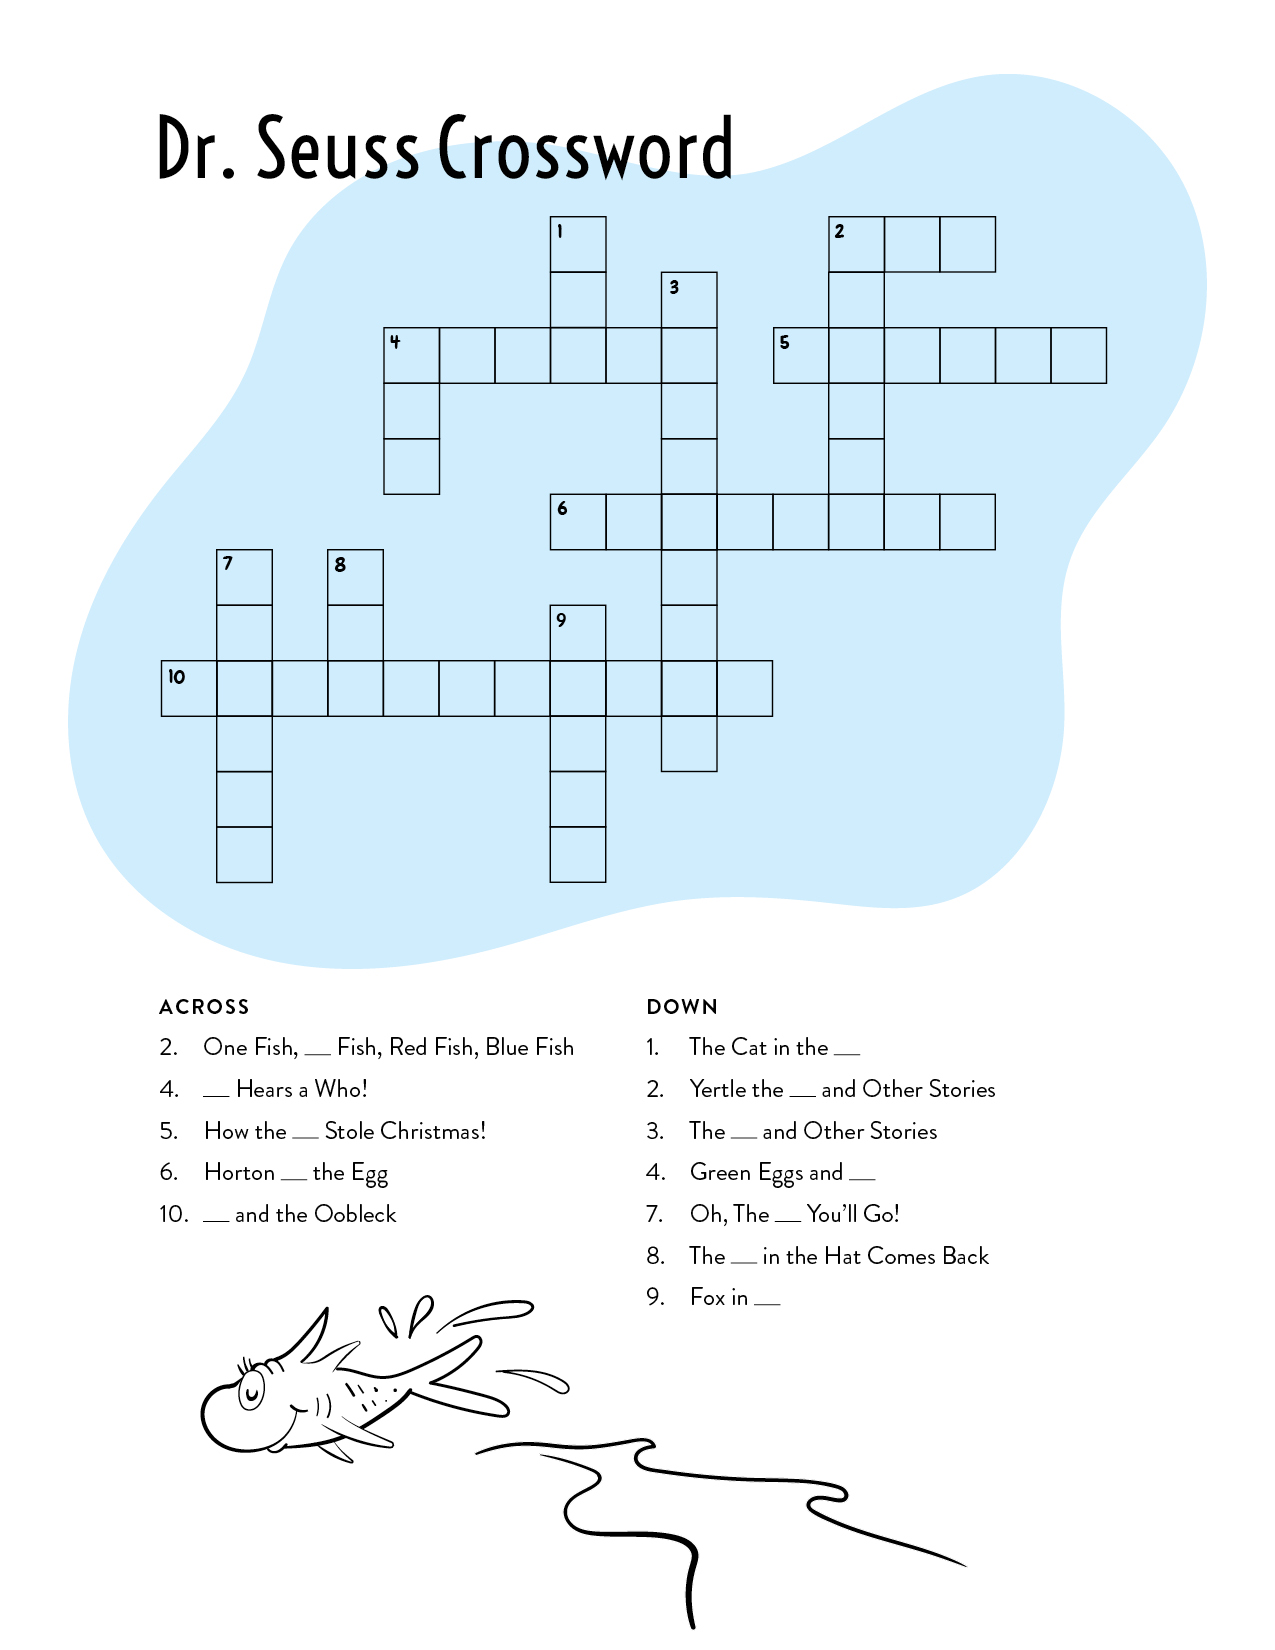 Dr. Seuss Crossword Puzzle